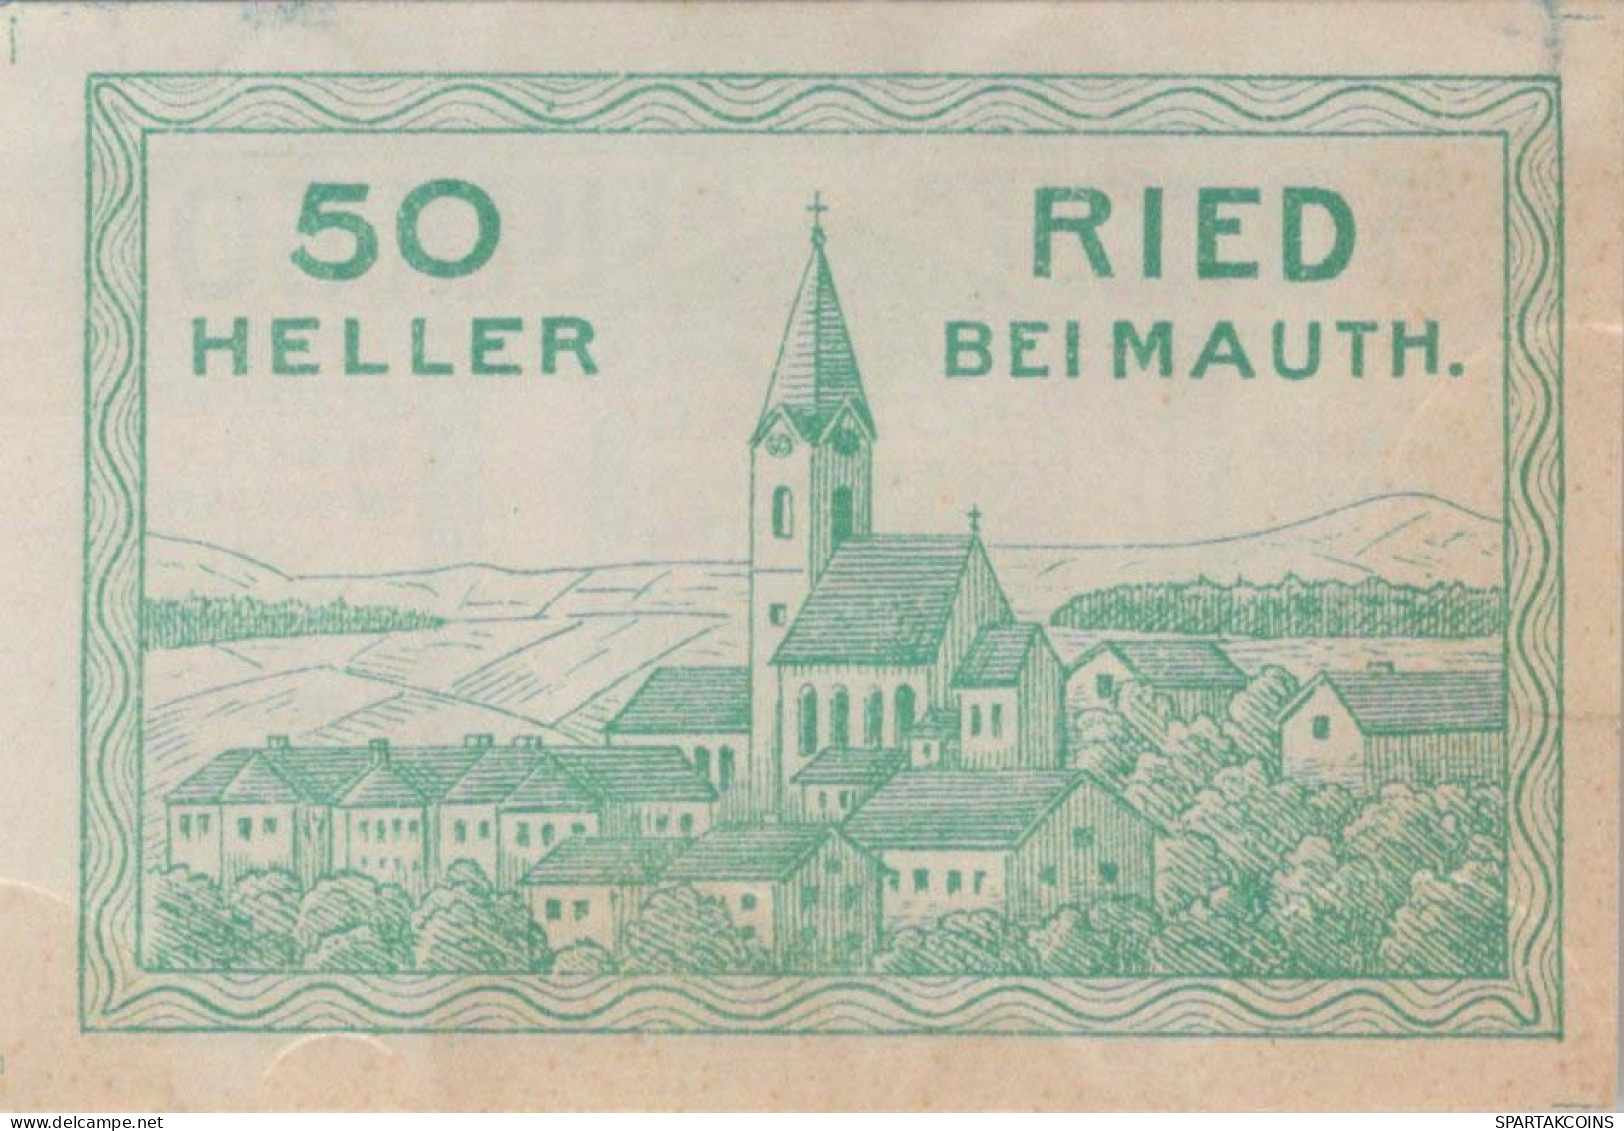 50 HELLER 1920 Stadt Ried Bei Mauthausen Österreich Notgeld Banknote #PD978 - [11] Emissions Locales